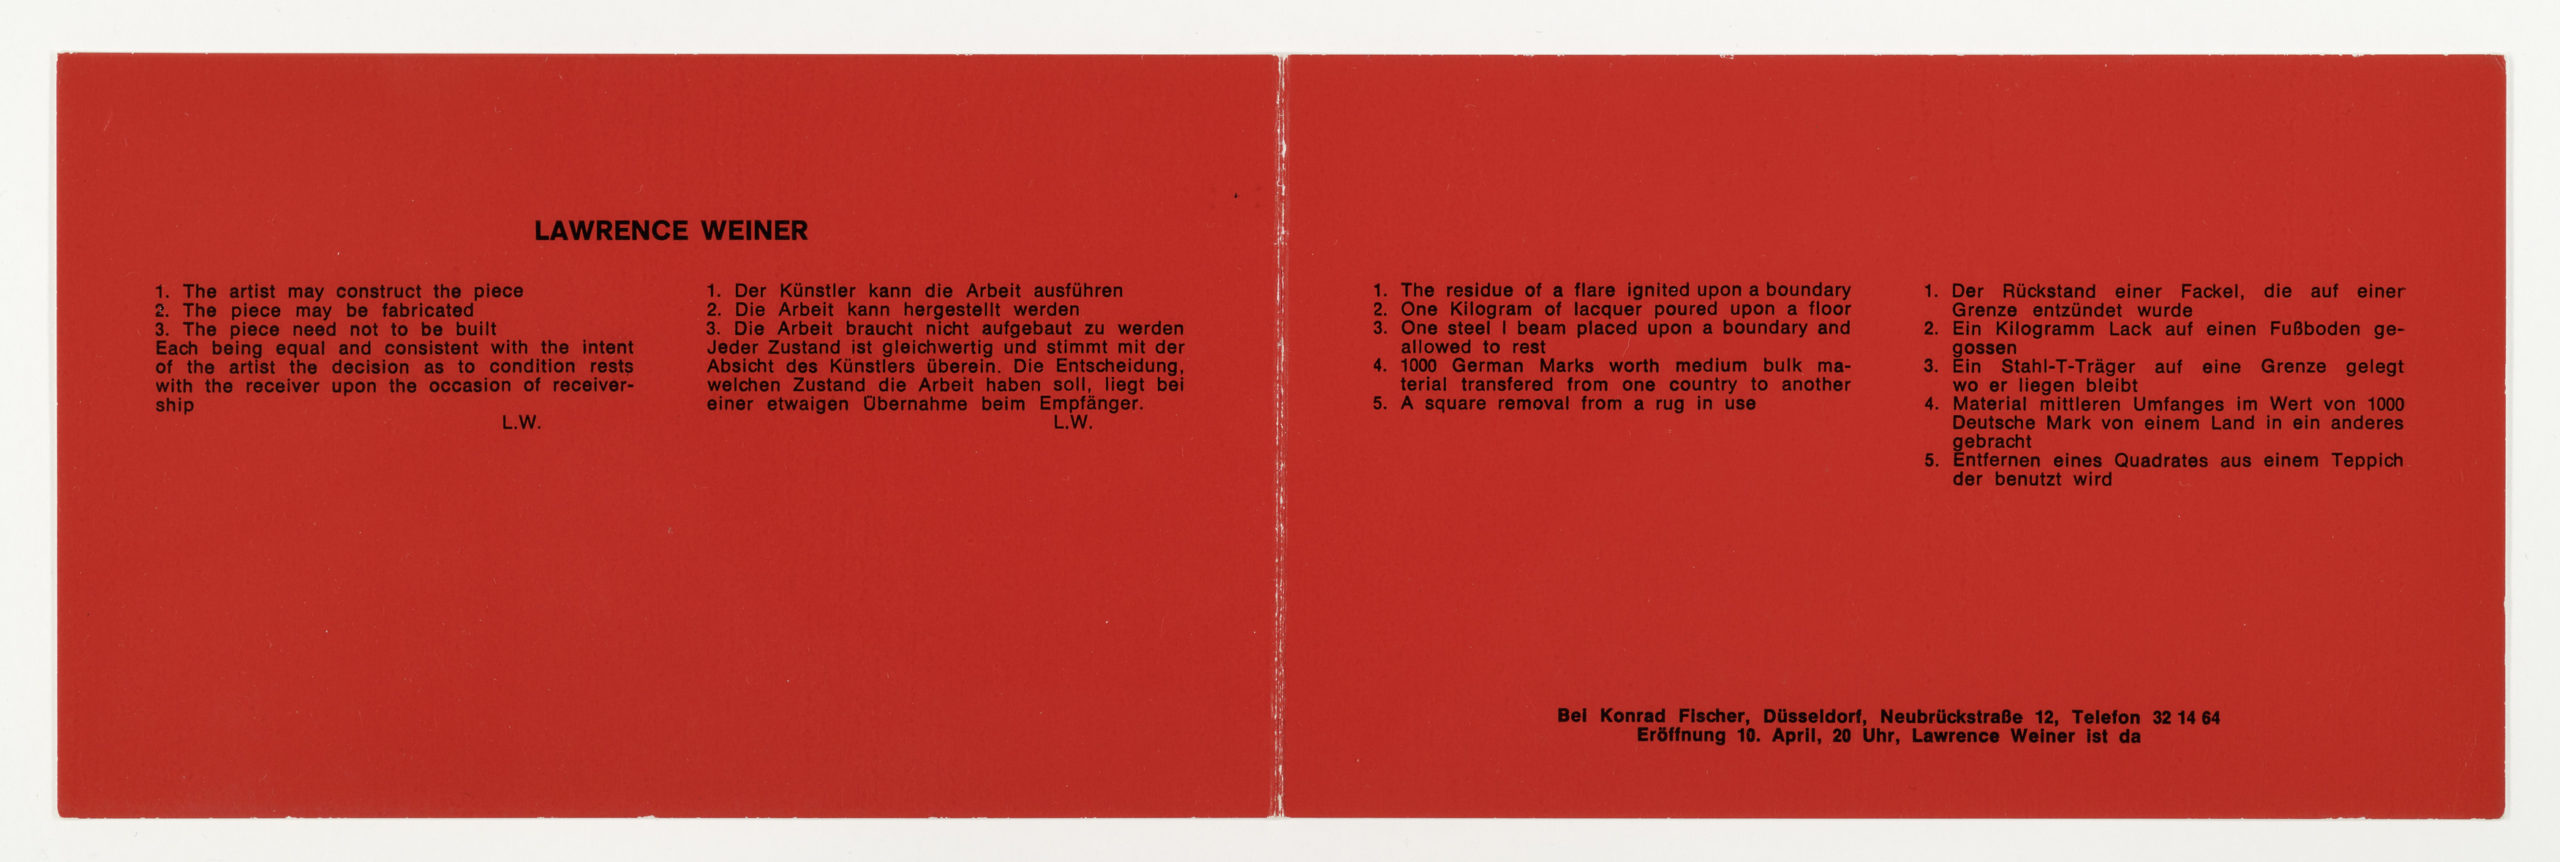 Lawrence Weiner, Galerie Konrad Fischer Düsseldorf, 1969 (invitation); Sammlung Marzona, Kunstbibliothek – Staatliche Museen zu Berlin; VG Bild-Kunst, Bonn.